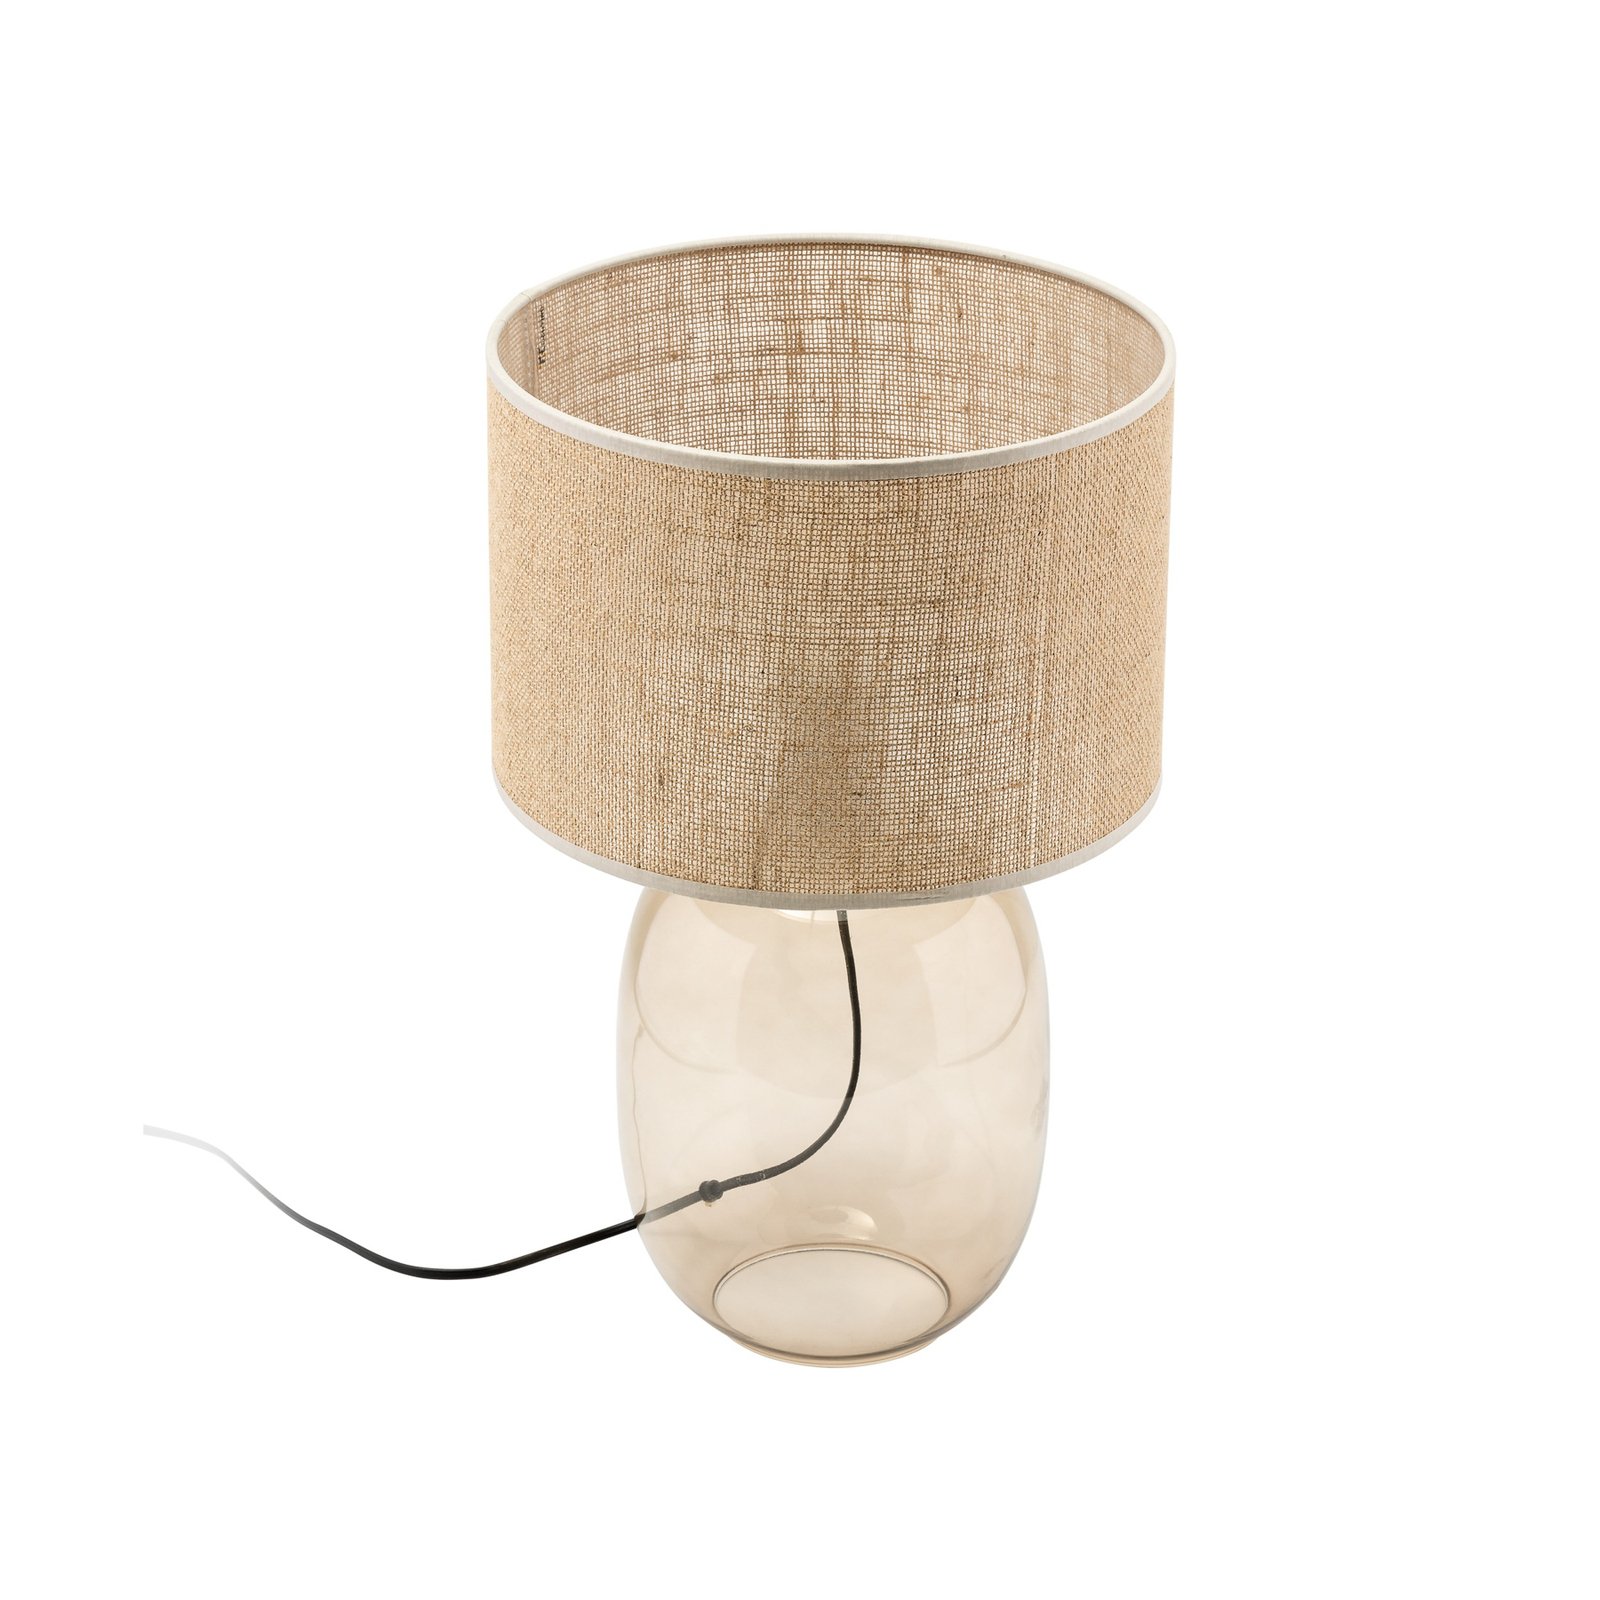 Melody bordlampe, højde 48 cm, brunt glas, naturlig jute